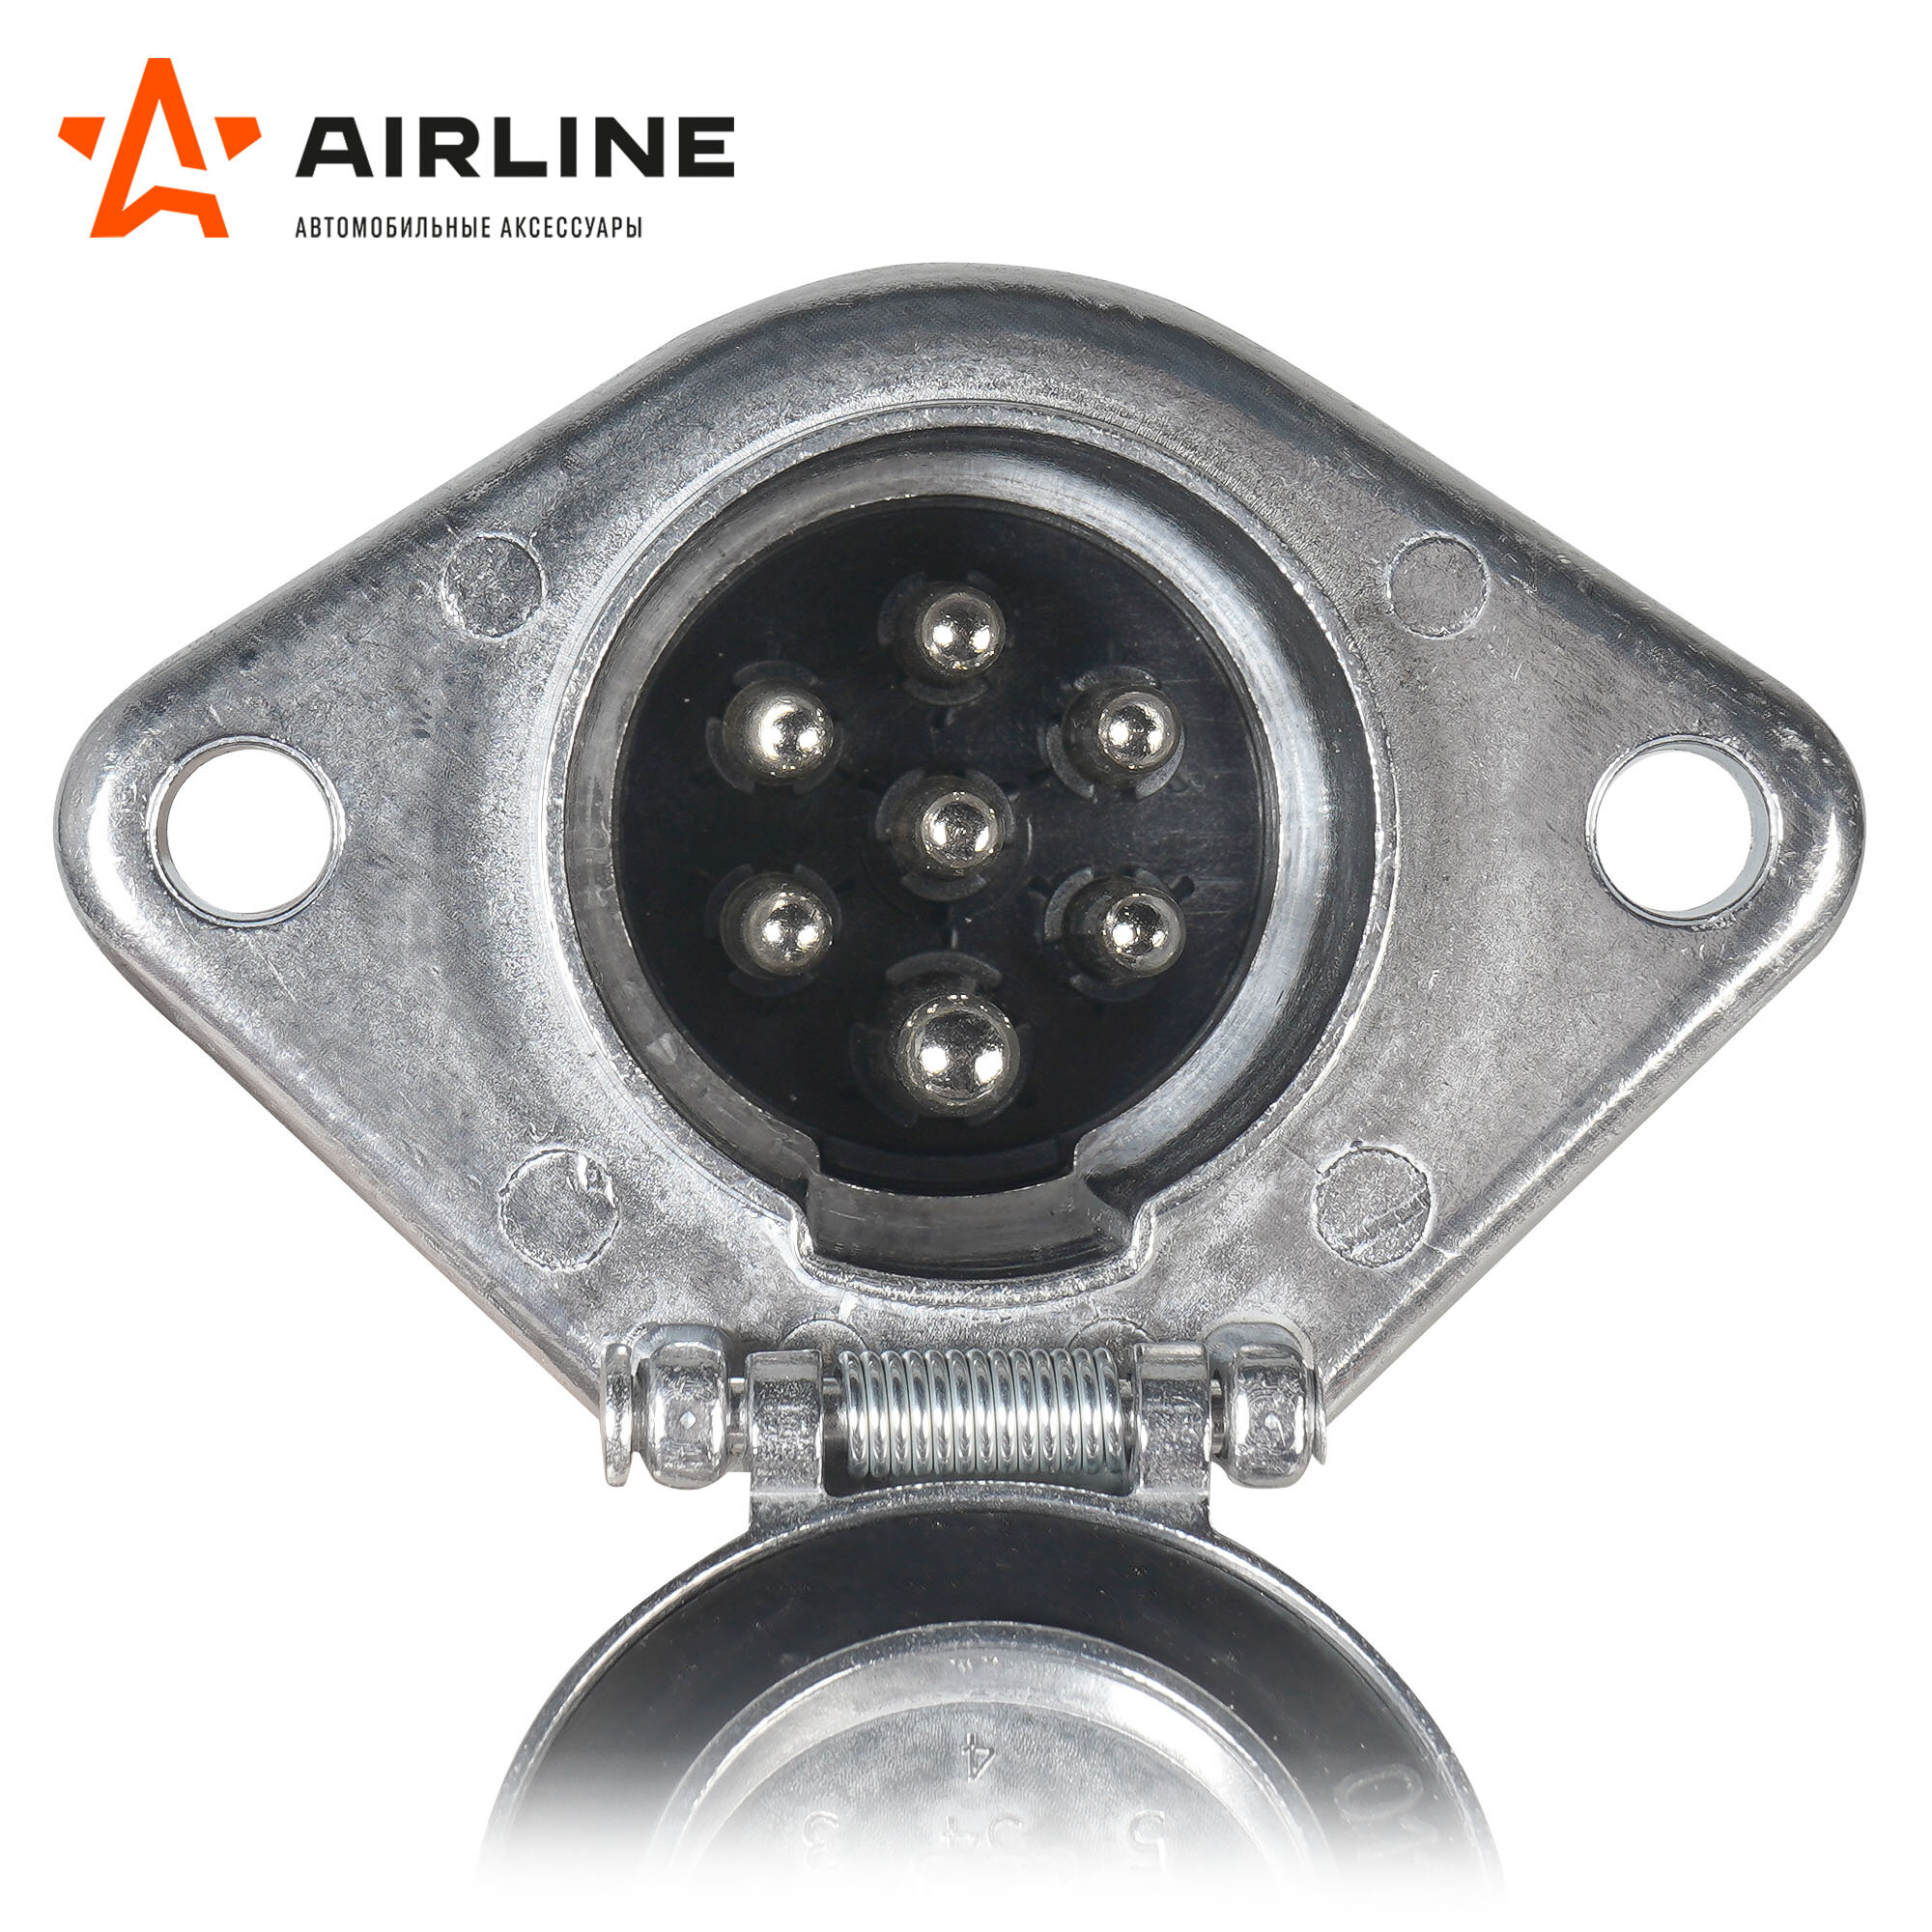 Розетка прицепа/тягача 24В тип-N 7 контактов металл (сальник) ATE-32 AIRLINE